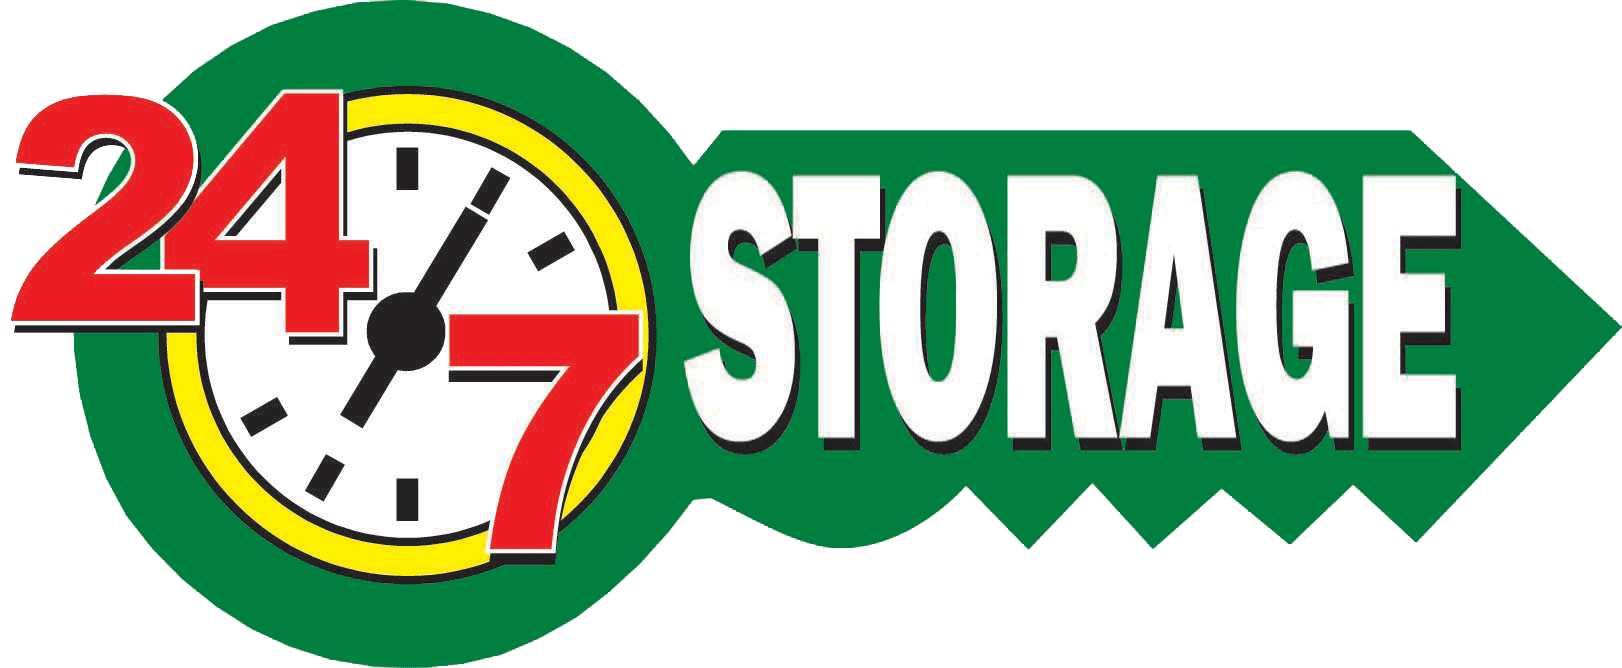 24-7 Storage - Fort Worth